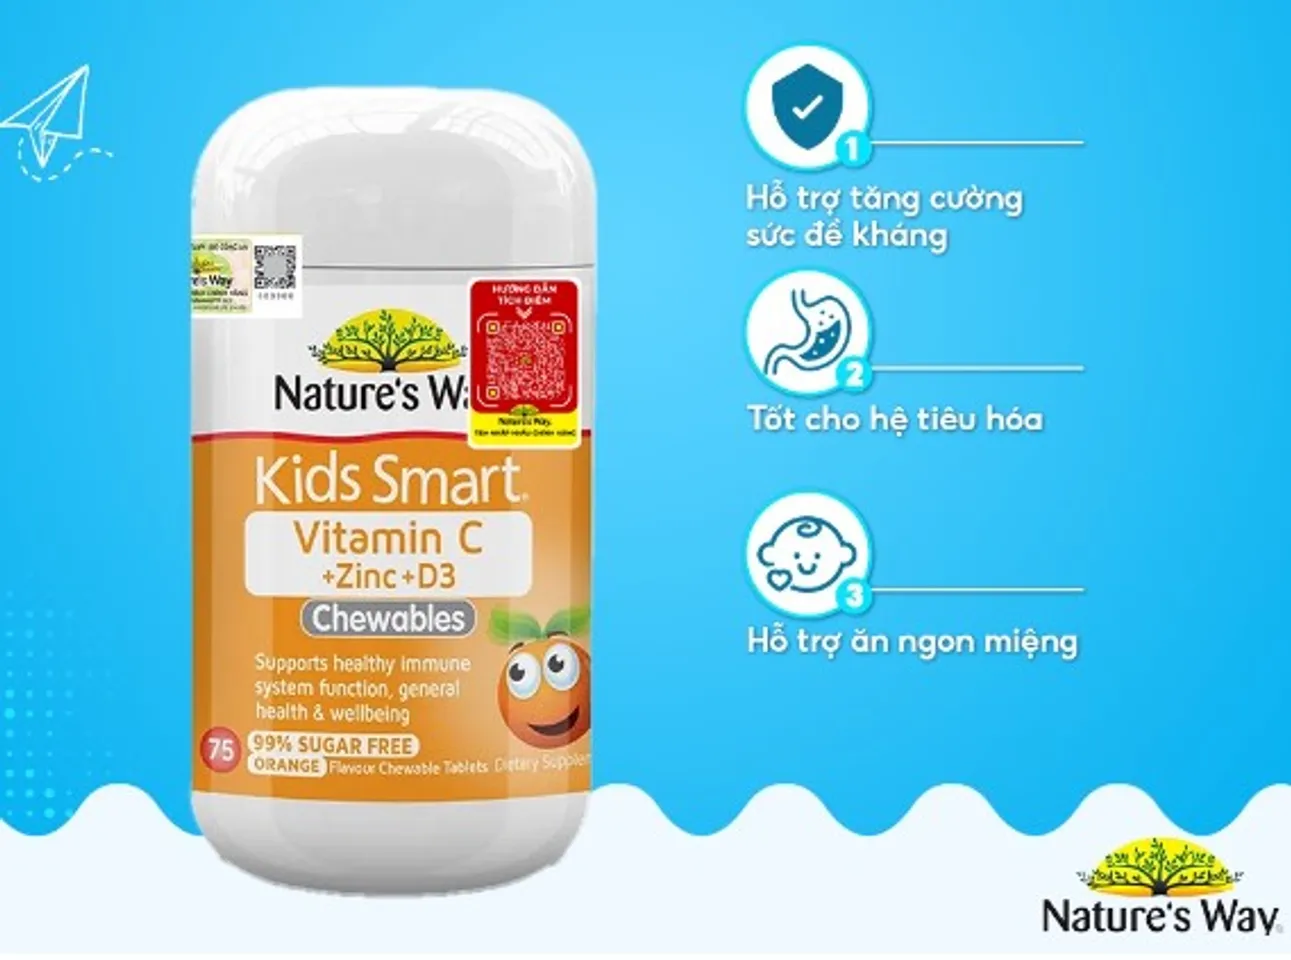 Nature’s Way Kids Smart Vitamin C + Zinc + D3 giúp tăng cường sức đề kháng và hỗ trợ trẻ ăn ngon miệng hơn